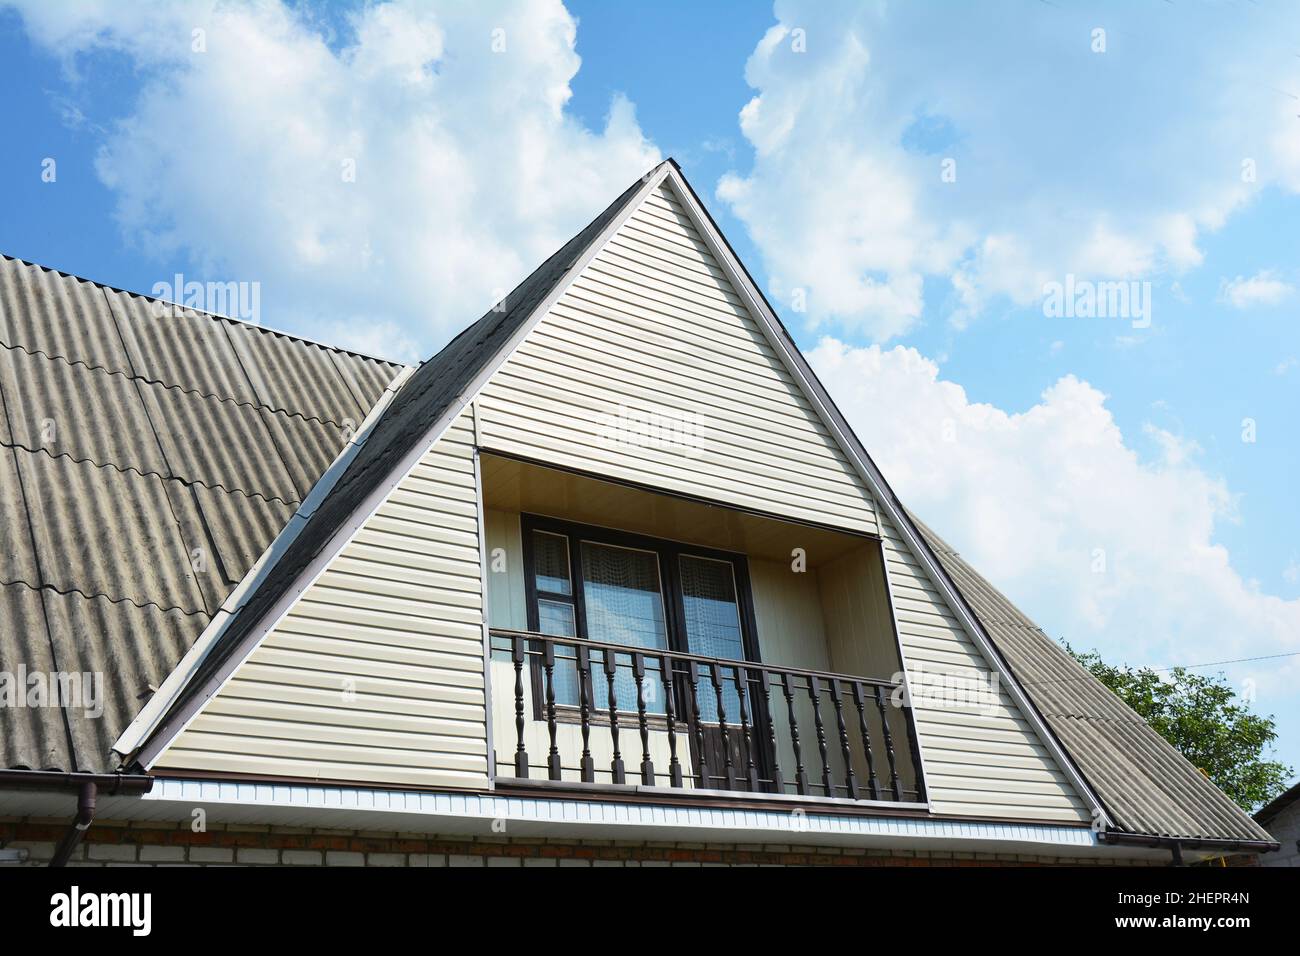 Giebel und Valley Dachkonstruktion mit gemütlichem Balkon. Gebäude Dachgeschosshausbau mit verschiedenen Arten von Dachkonstruktionen Stockfoto